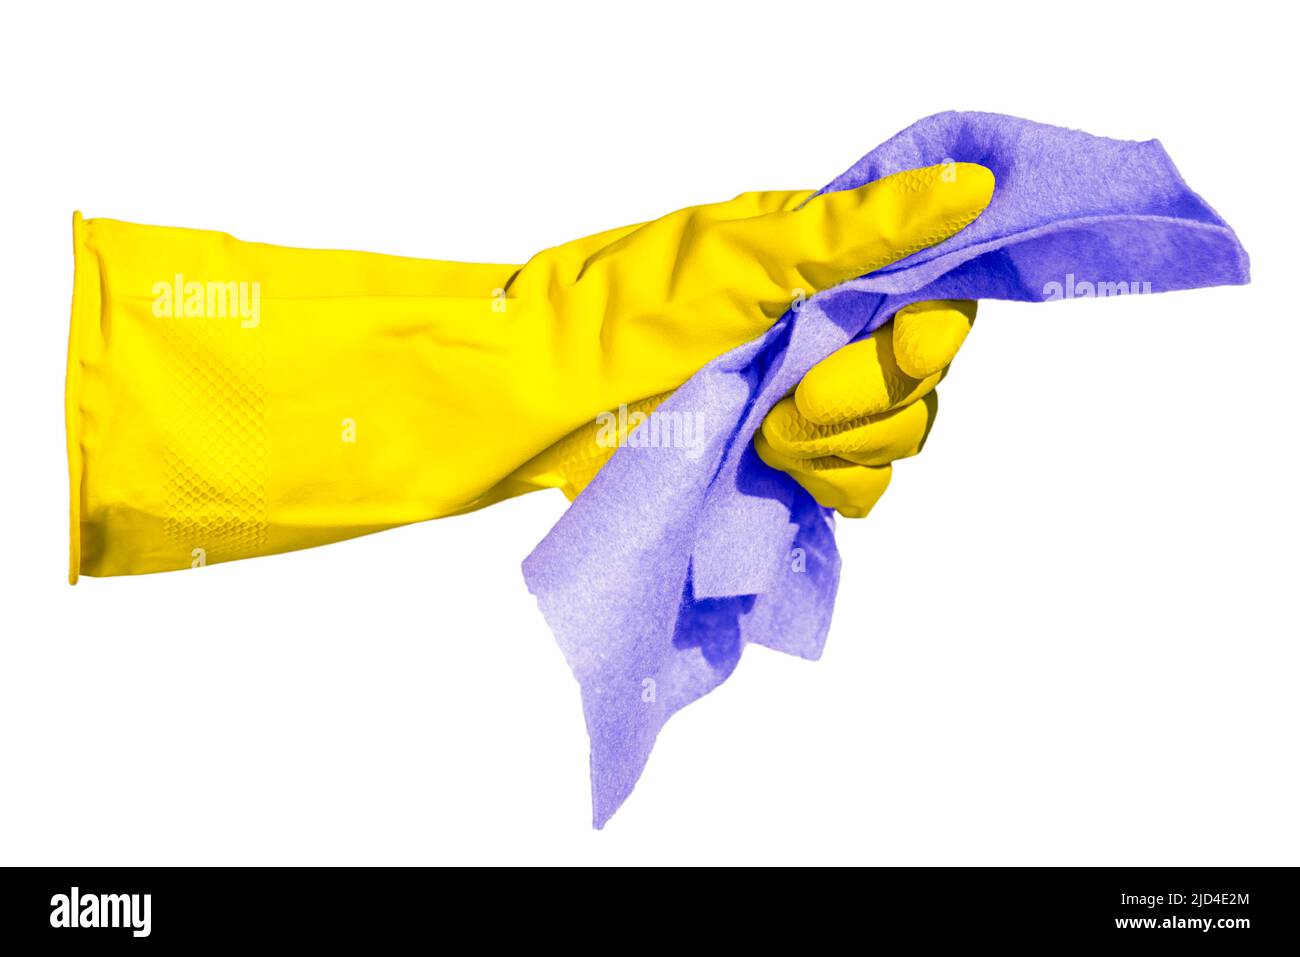 Mano in un guanto giallo tiene uno straccio per la pulizia isolato su uno sfondo bianco. Nei colori giallo e blu della bandiera Ucraina Foto Stock